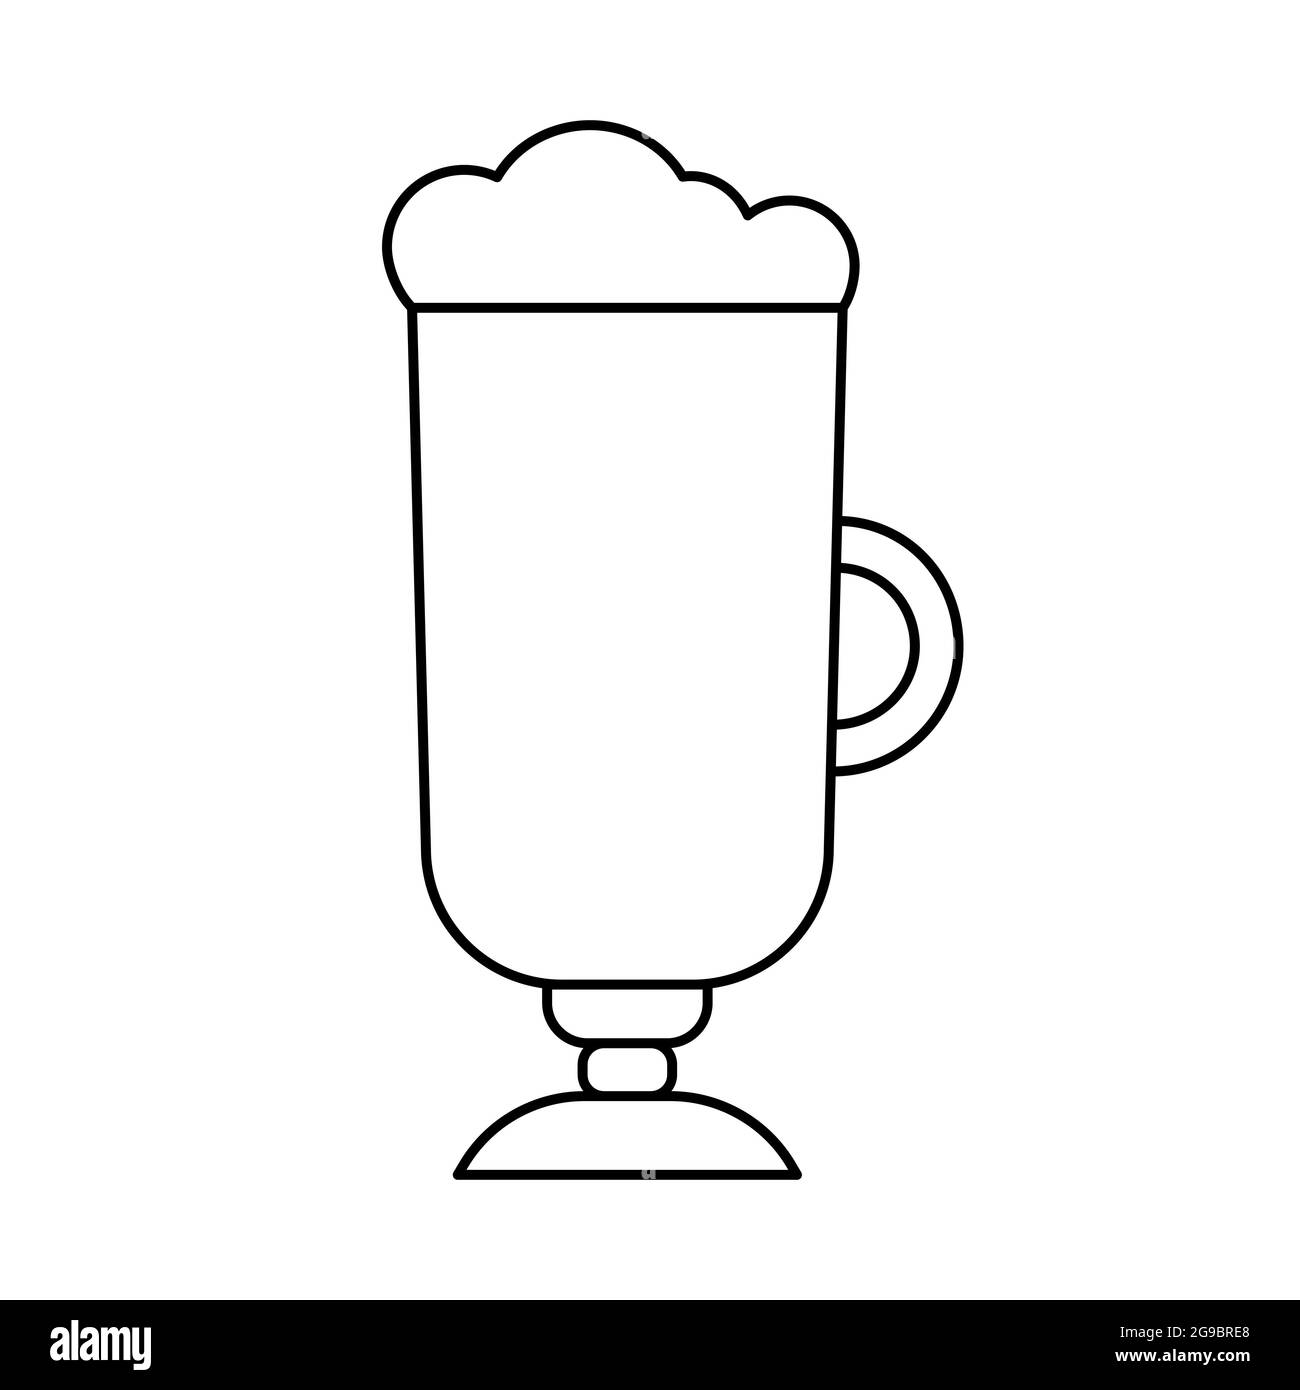 Icona del contorno del caffè irlandese. Simbolo lineare di bevande calde e caffè. Bicchiere con frappé o latte macchiato. Illustrazione vettoriale isolata su sfondo bianco Illustrazione Vettoriale